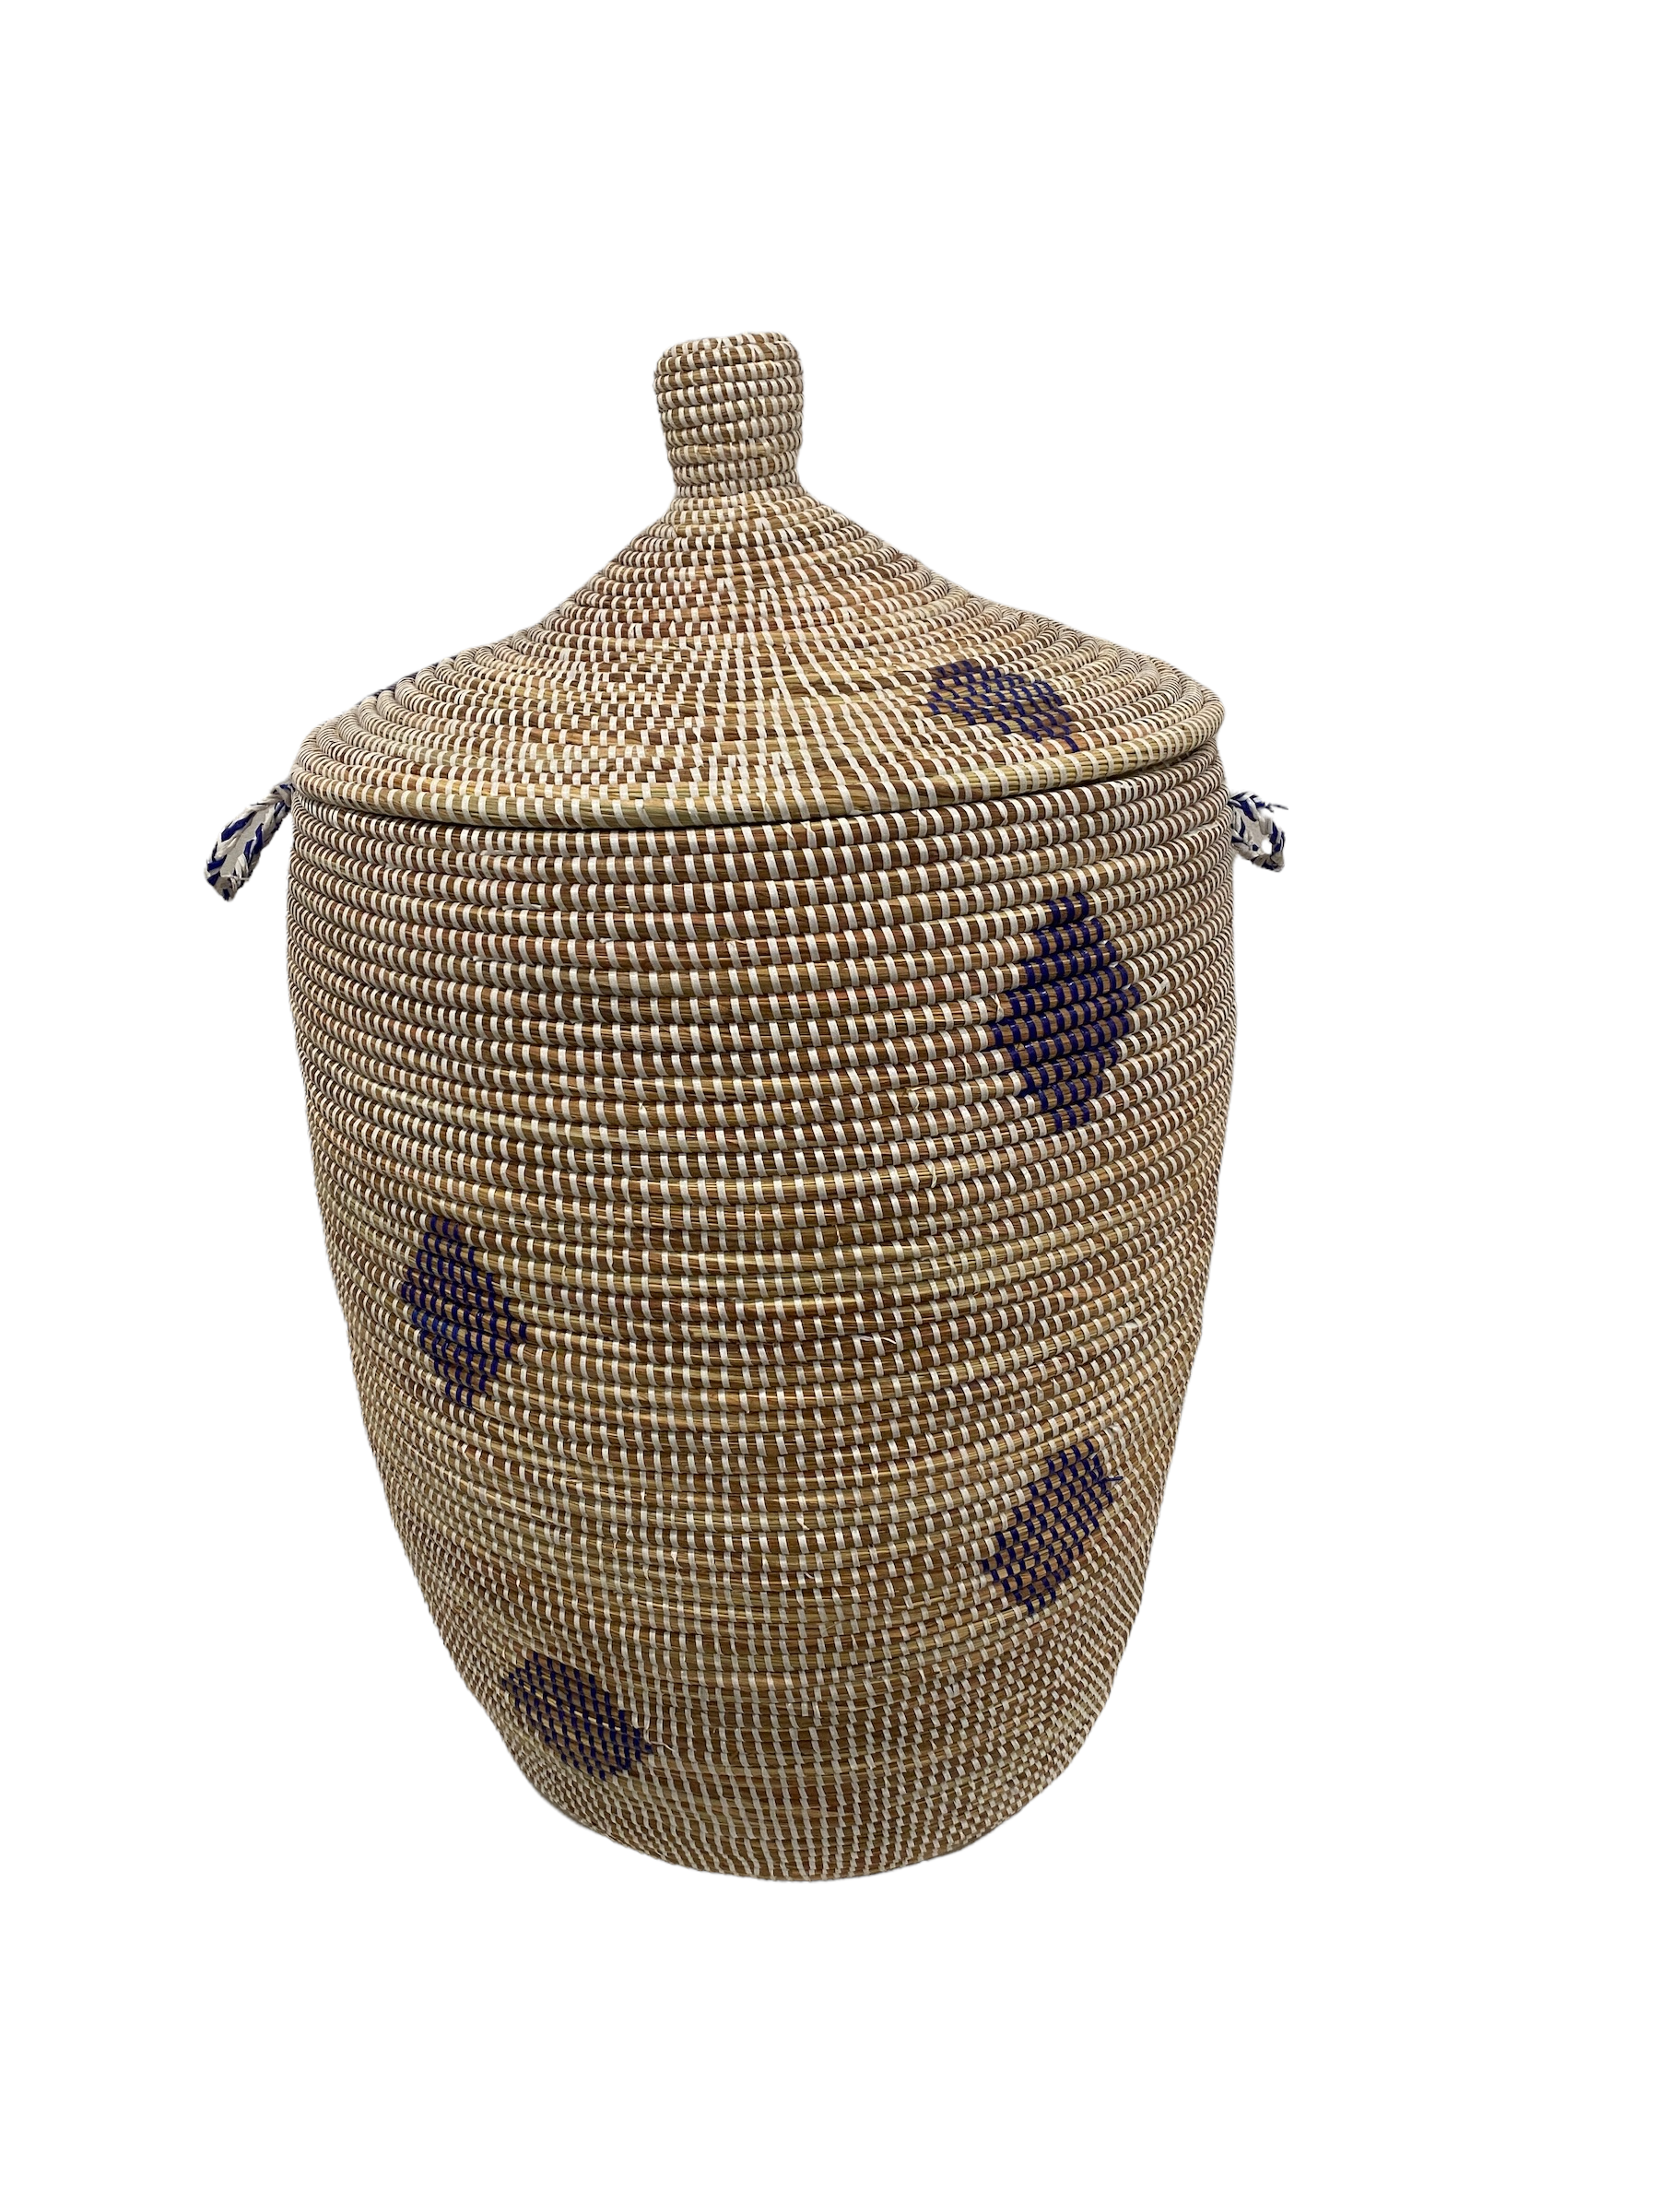 botanicalboysuk Senegal Laundry Basket - (88a.3